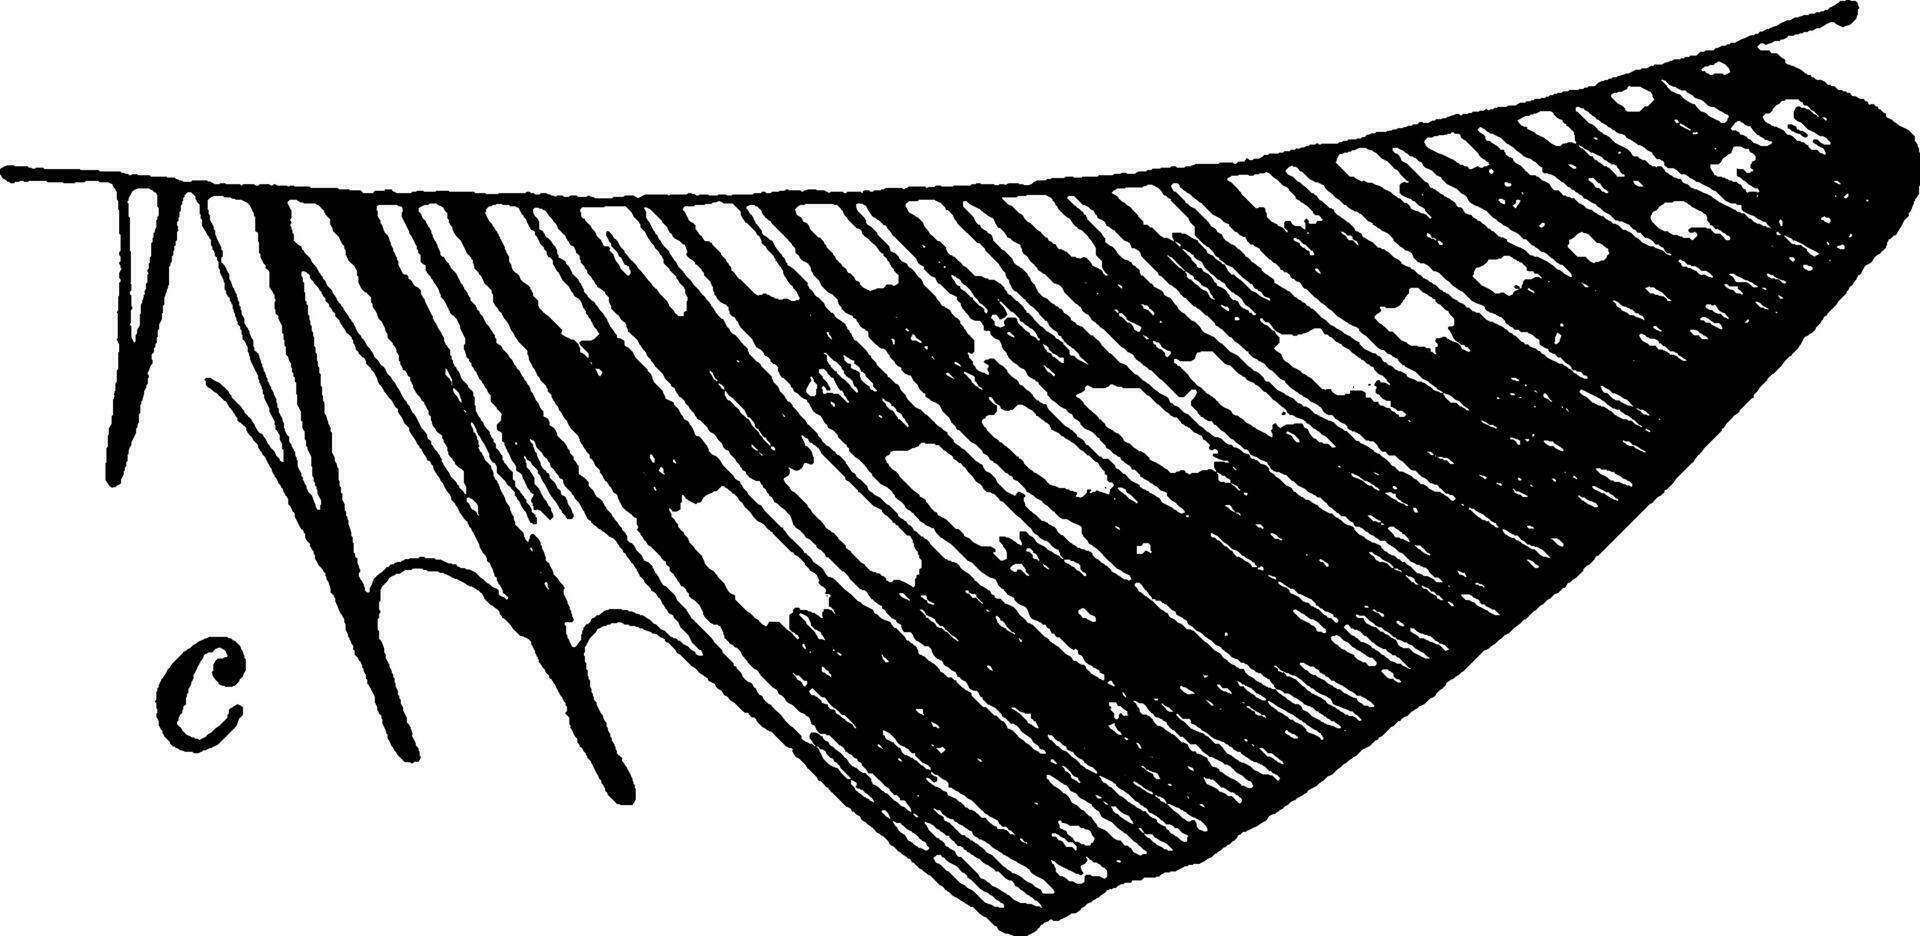 Tres espinas en el anal aleta de un óseo pez, Clásico ilustración. vector